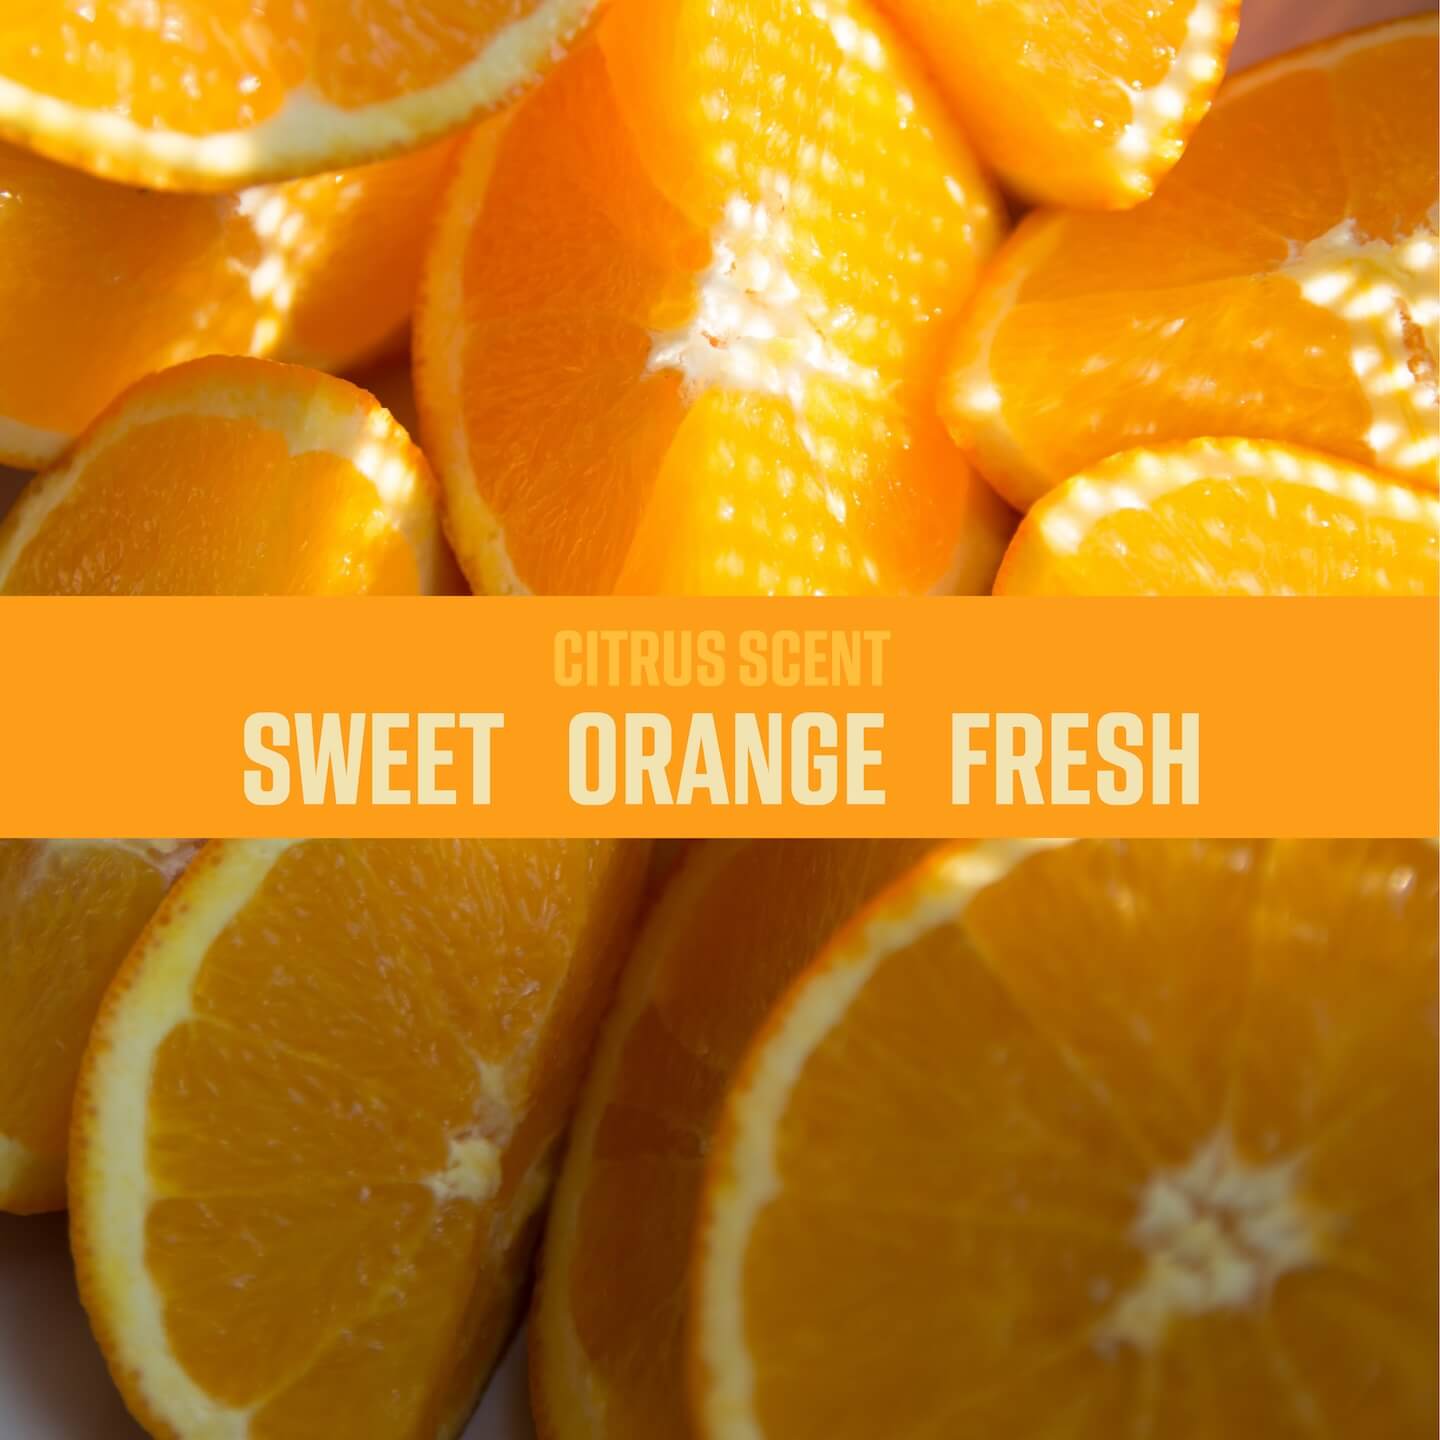 Citrus scent: sweet, orange, fresh